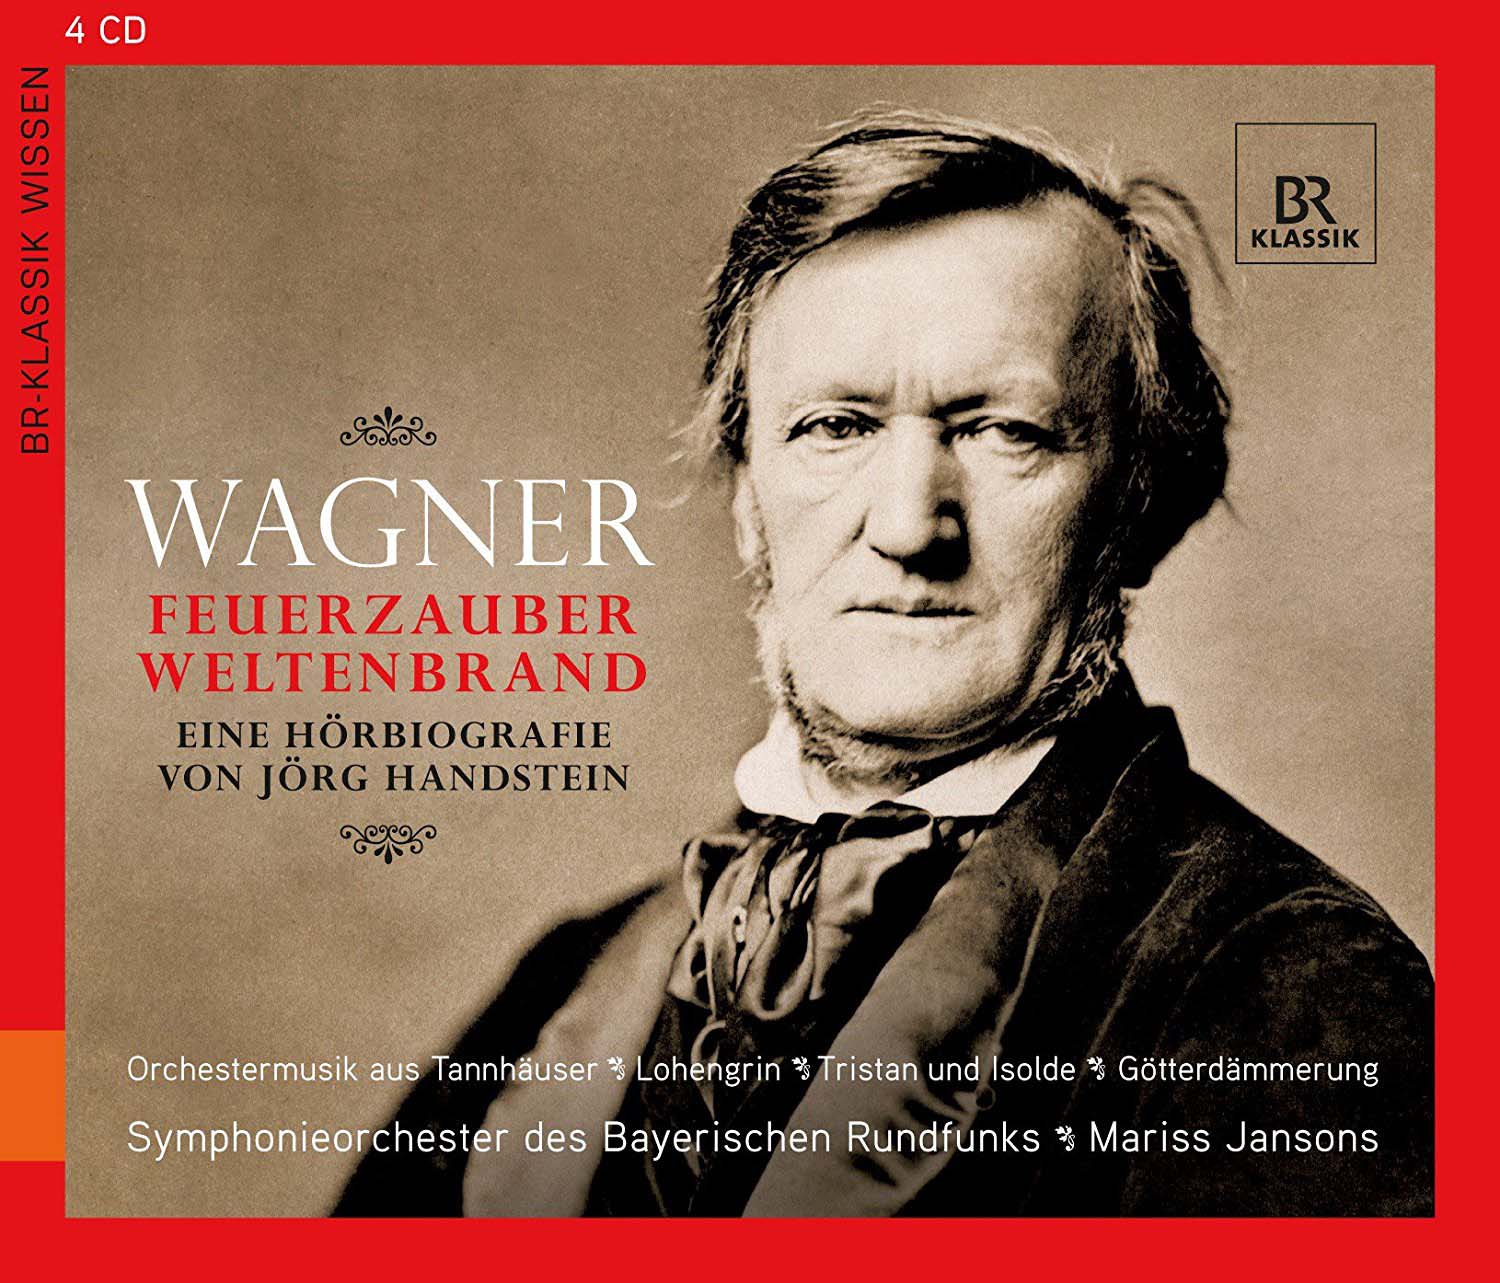 Audio Cd Richard Wagner - Feuerzauber Weltenbrand NUOVO SIGILLATO, EDIZIONE DEL 01/07/2013 SUBITO DISPONIBILE